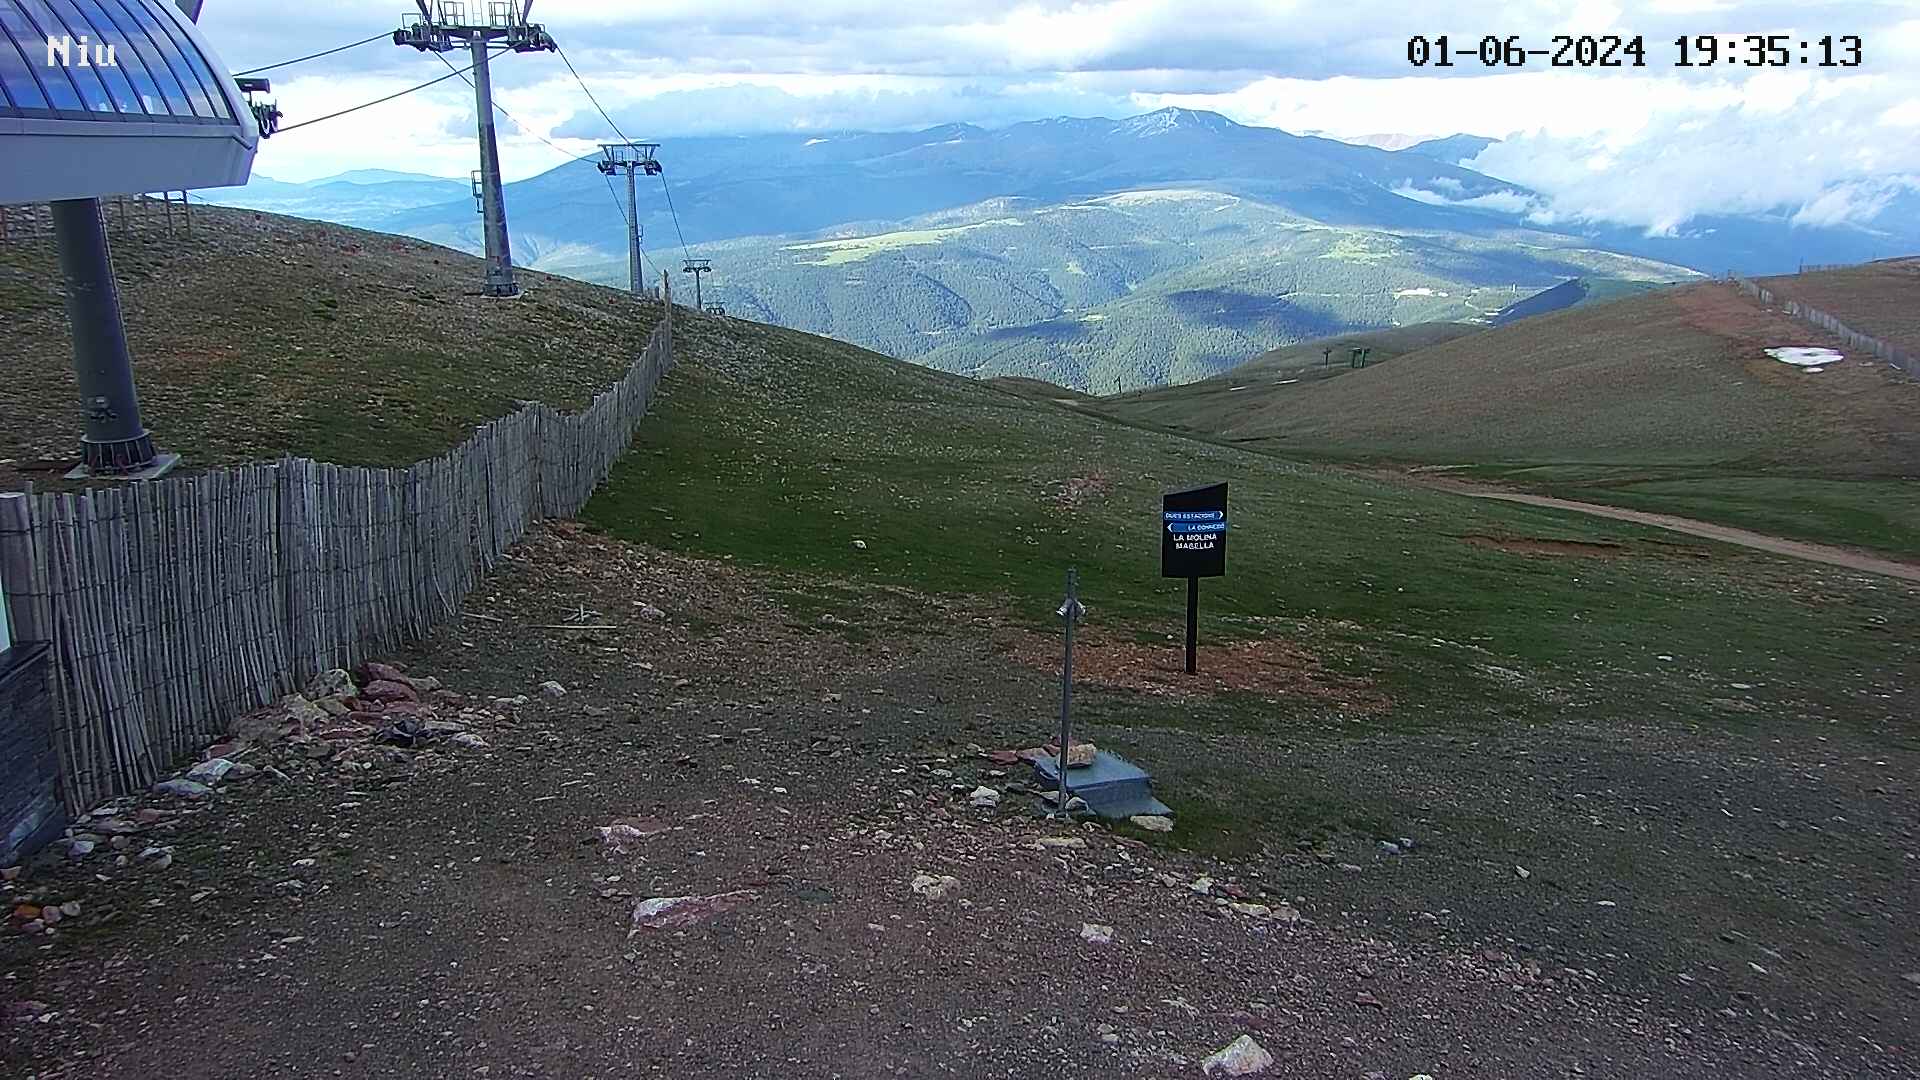 La Molina webcam - Niu de l'Àliga mountain refuge